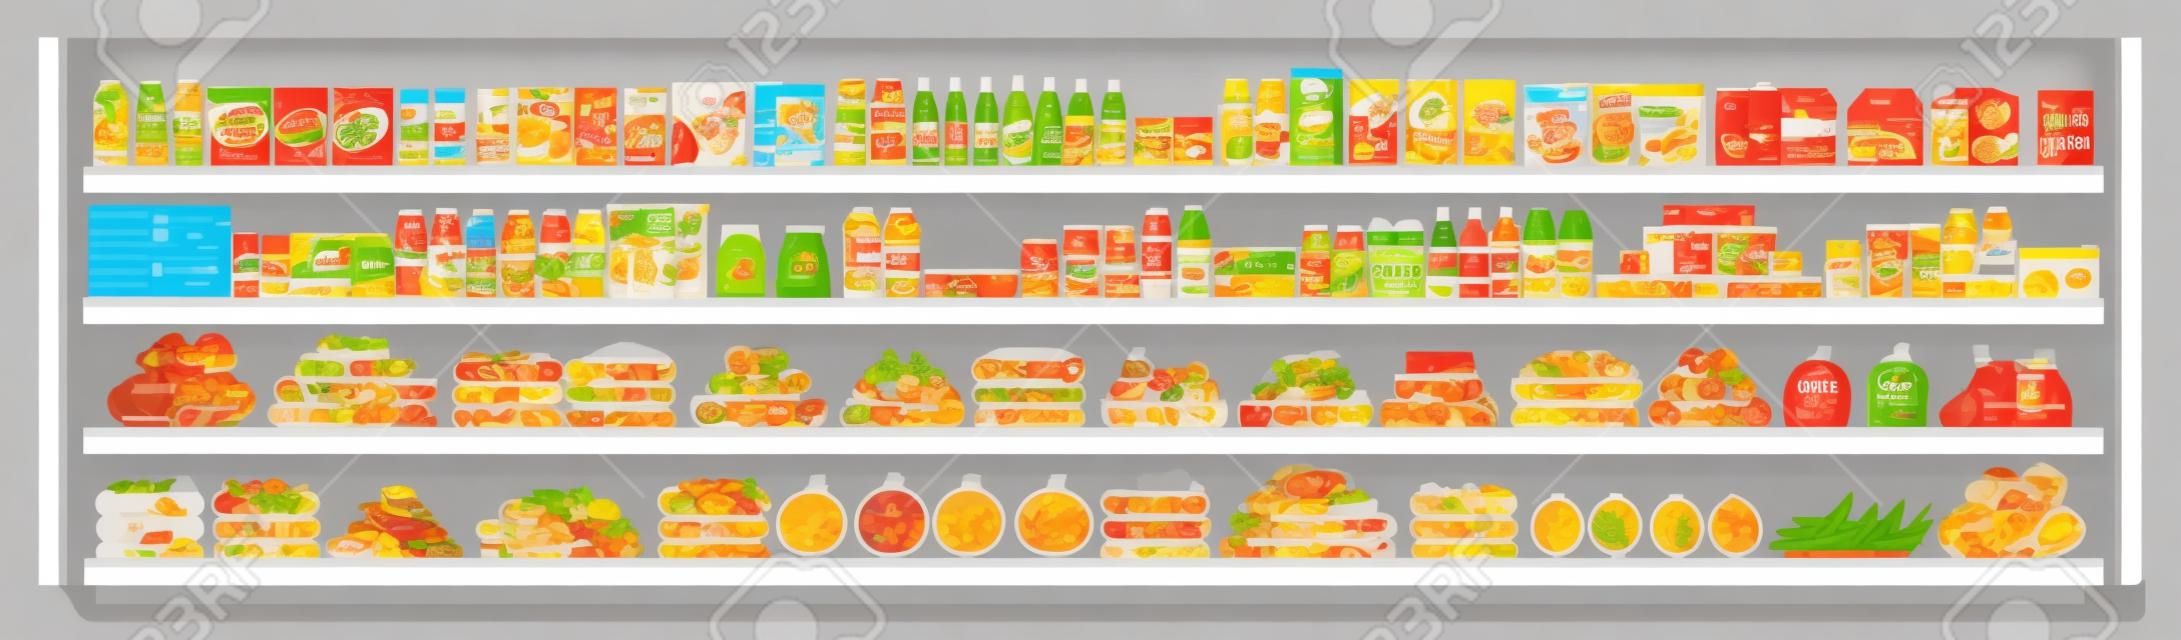 スーパーマーケットの棚に食料品や食品や飲み物のフラットベクターシームレスな背景イラストの品揃えと完全に提供しています。ショッピングと小売のコンセプト。